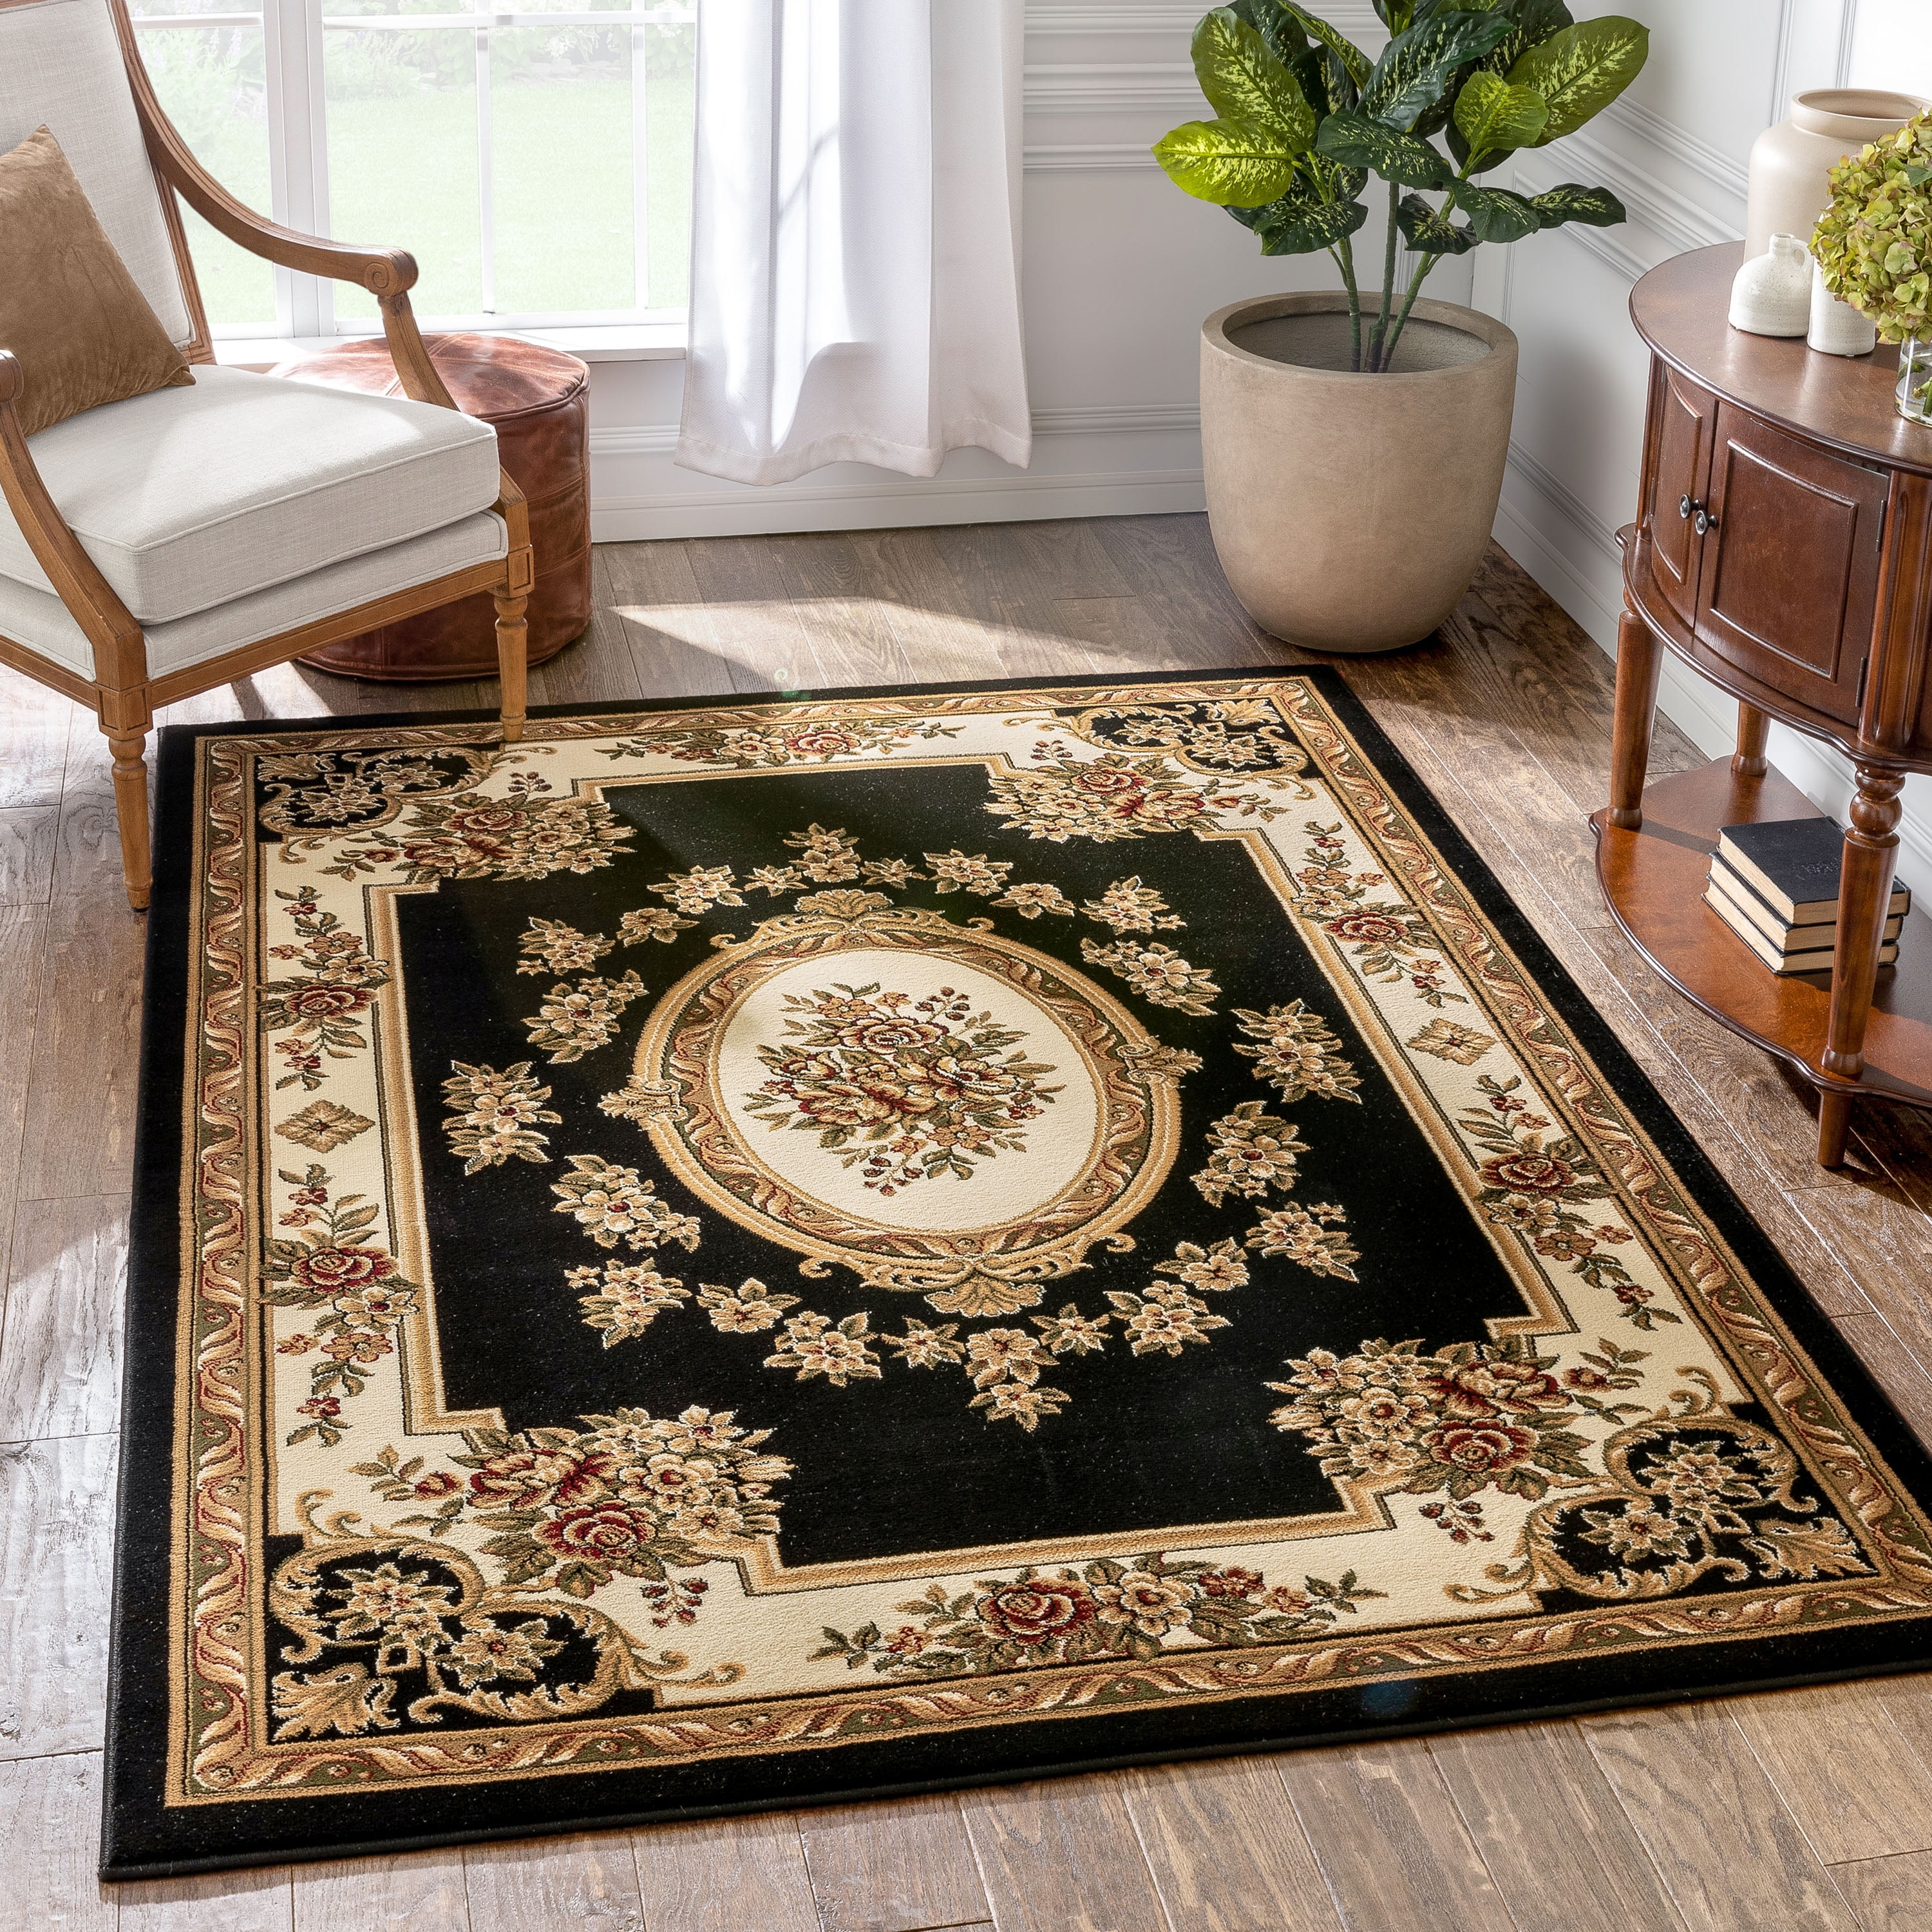 Decorative vintage rug Oriental rug Turkish rug Handmade rug Bohemian rug Organic rug Doormat 5.2 x 2.6 Feet No 9599 Small area rug